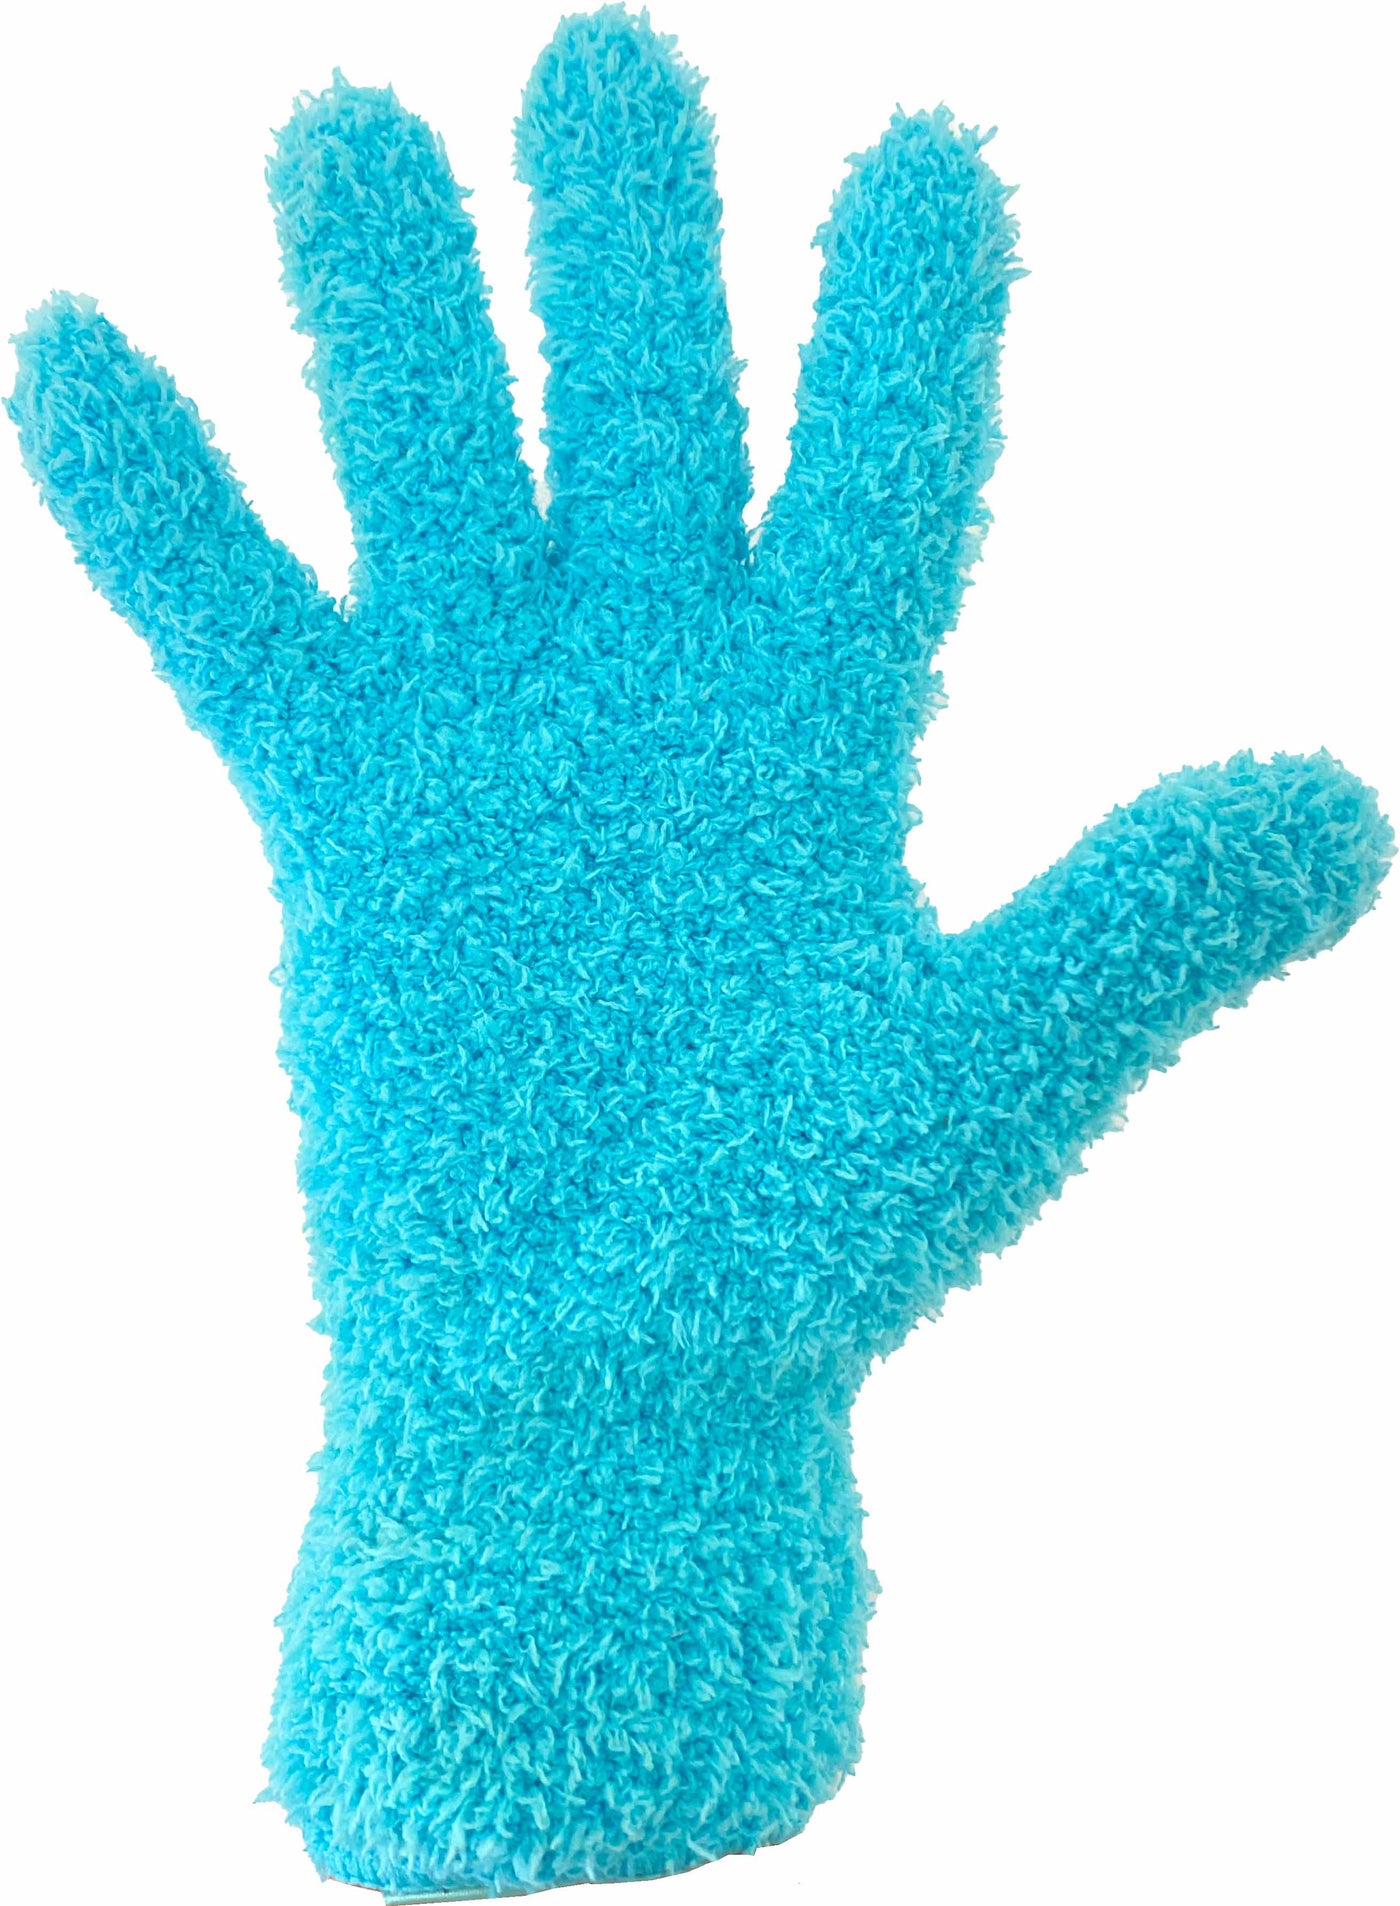 The Blendies Knitted Gloves 2pk